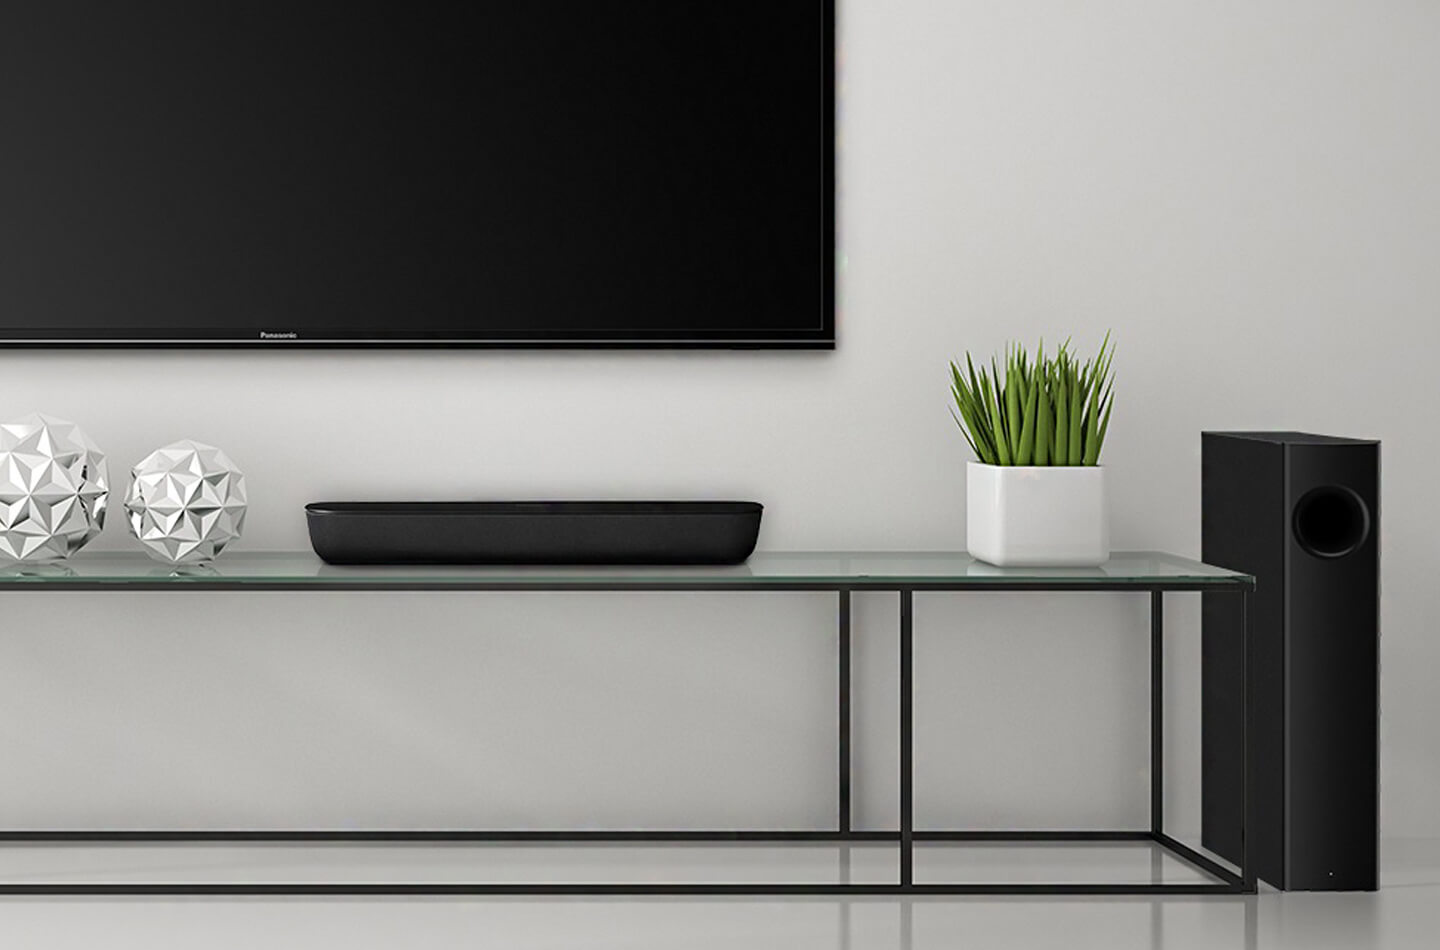 plafond zwaard zebra Panasonic soundbar voorziet TV van beter geluid | LetsGoDigital